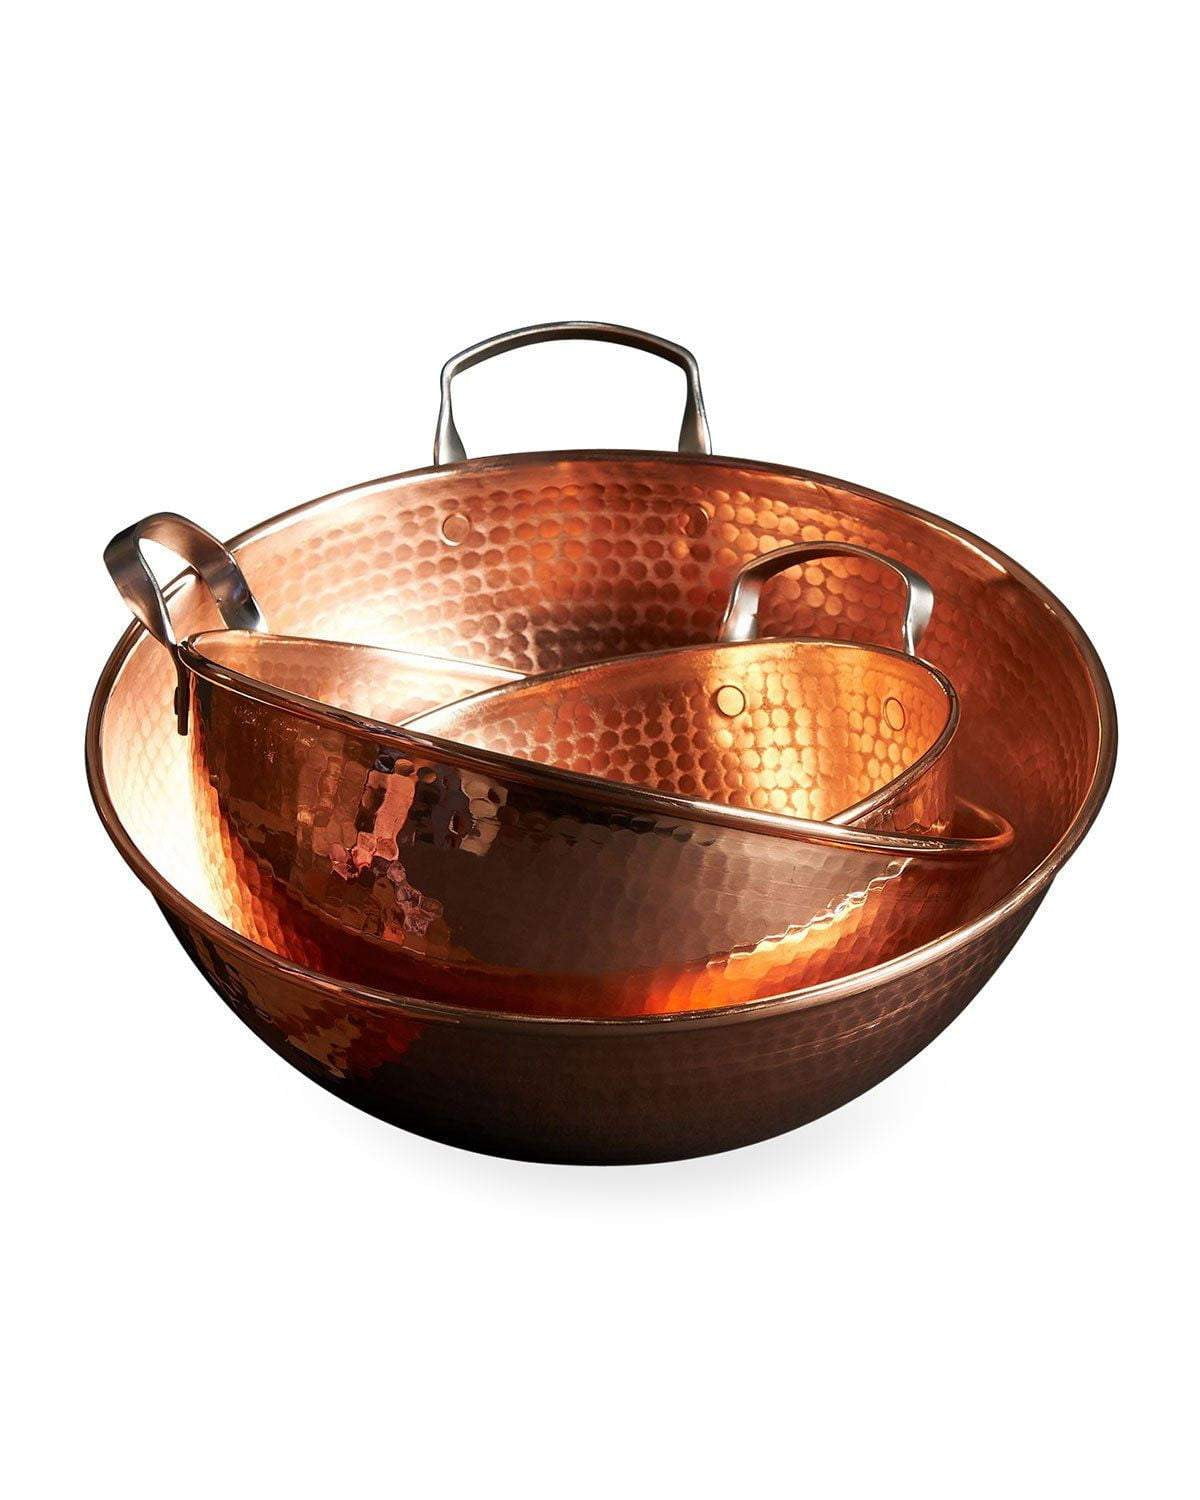 Sertodo Copper Mixing Bowls, 6 qt